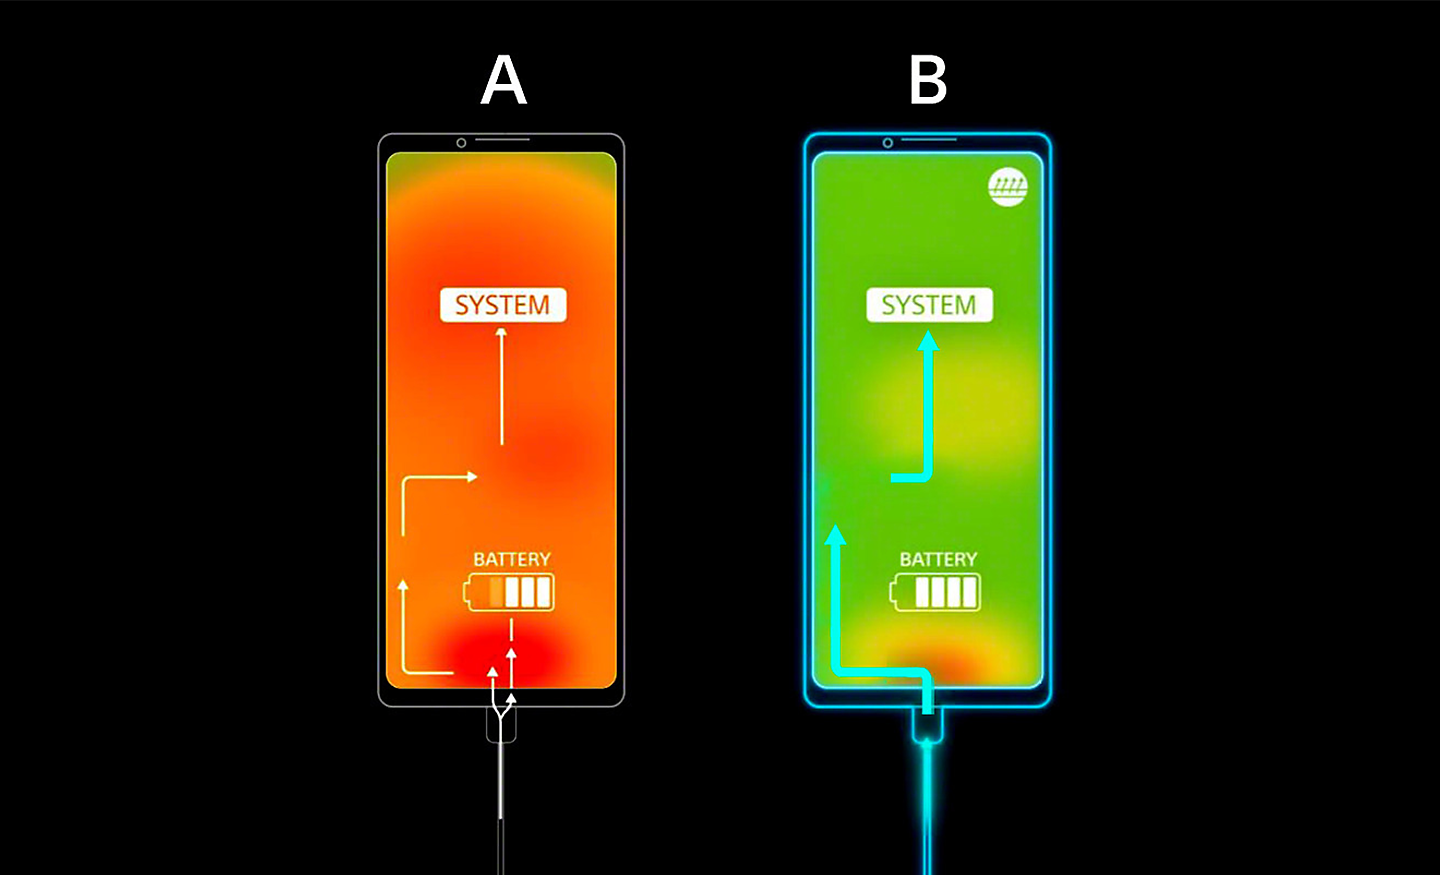 Diagrama que muestra el teléfono A, que se sobrecalienta y tiene la pantalla naranja, y el teléfono B, que tiene la pantalla verde